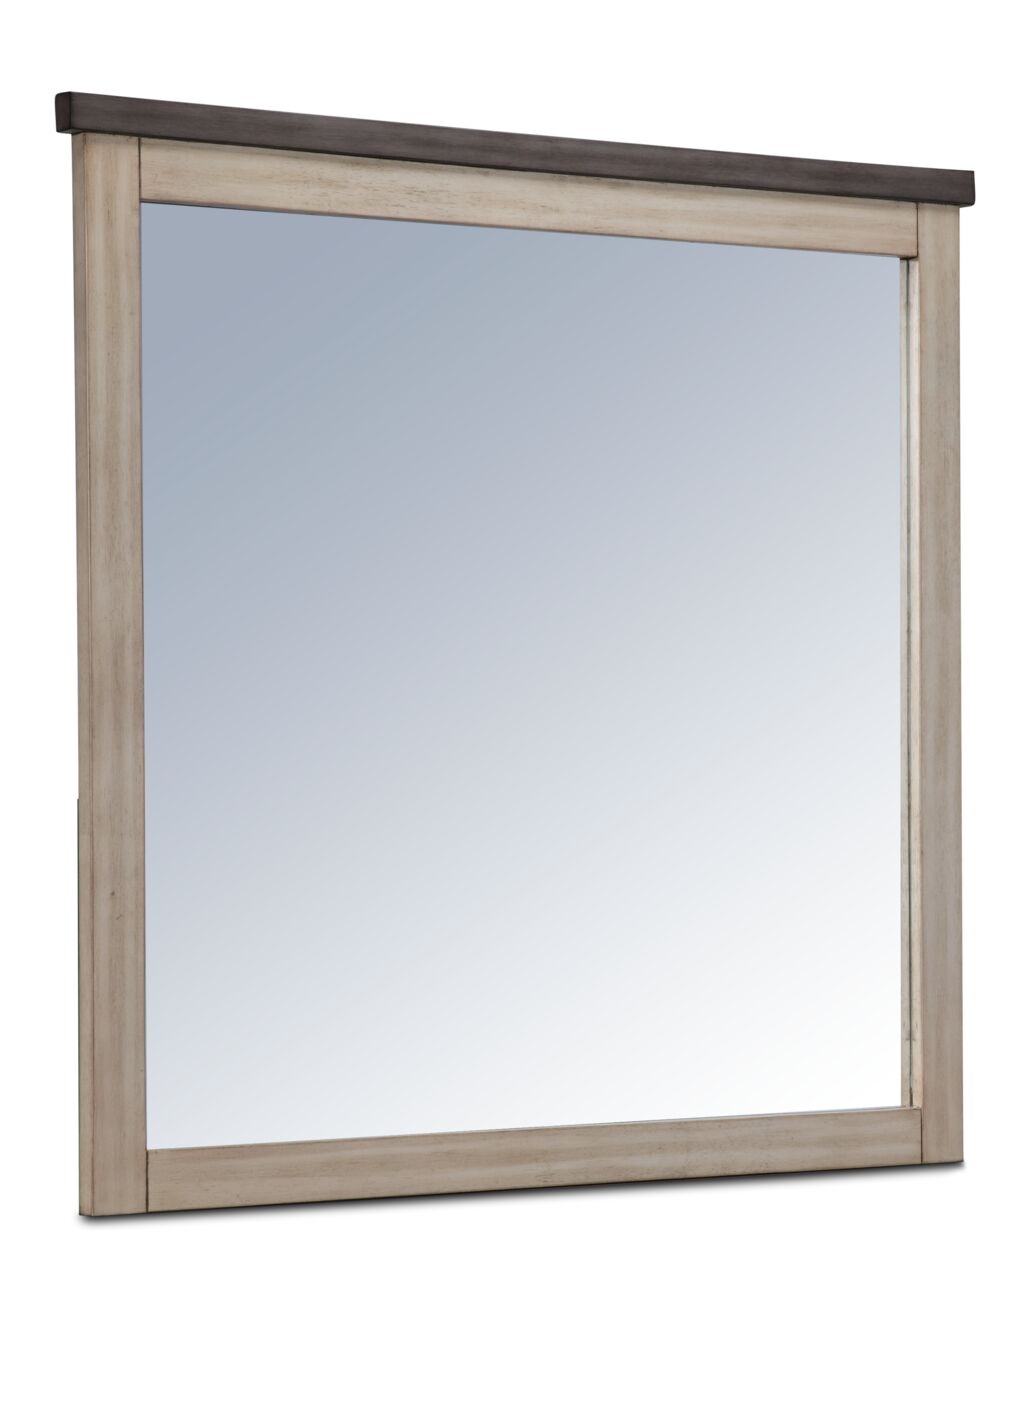 Woodland Mirror - Grey, Weathered Beige